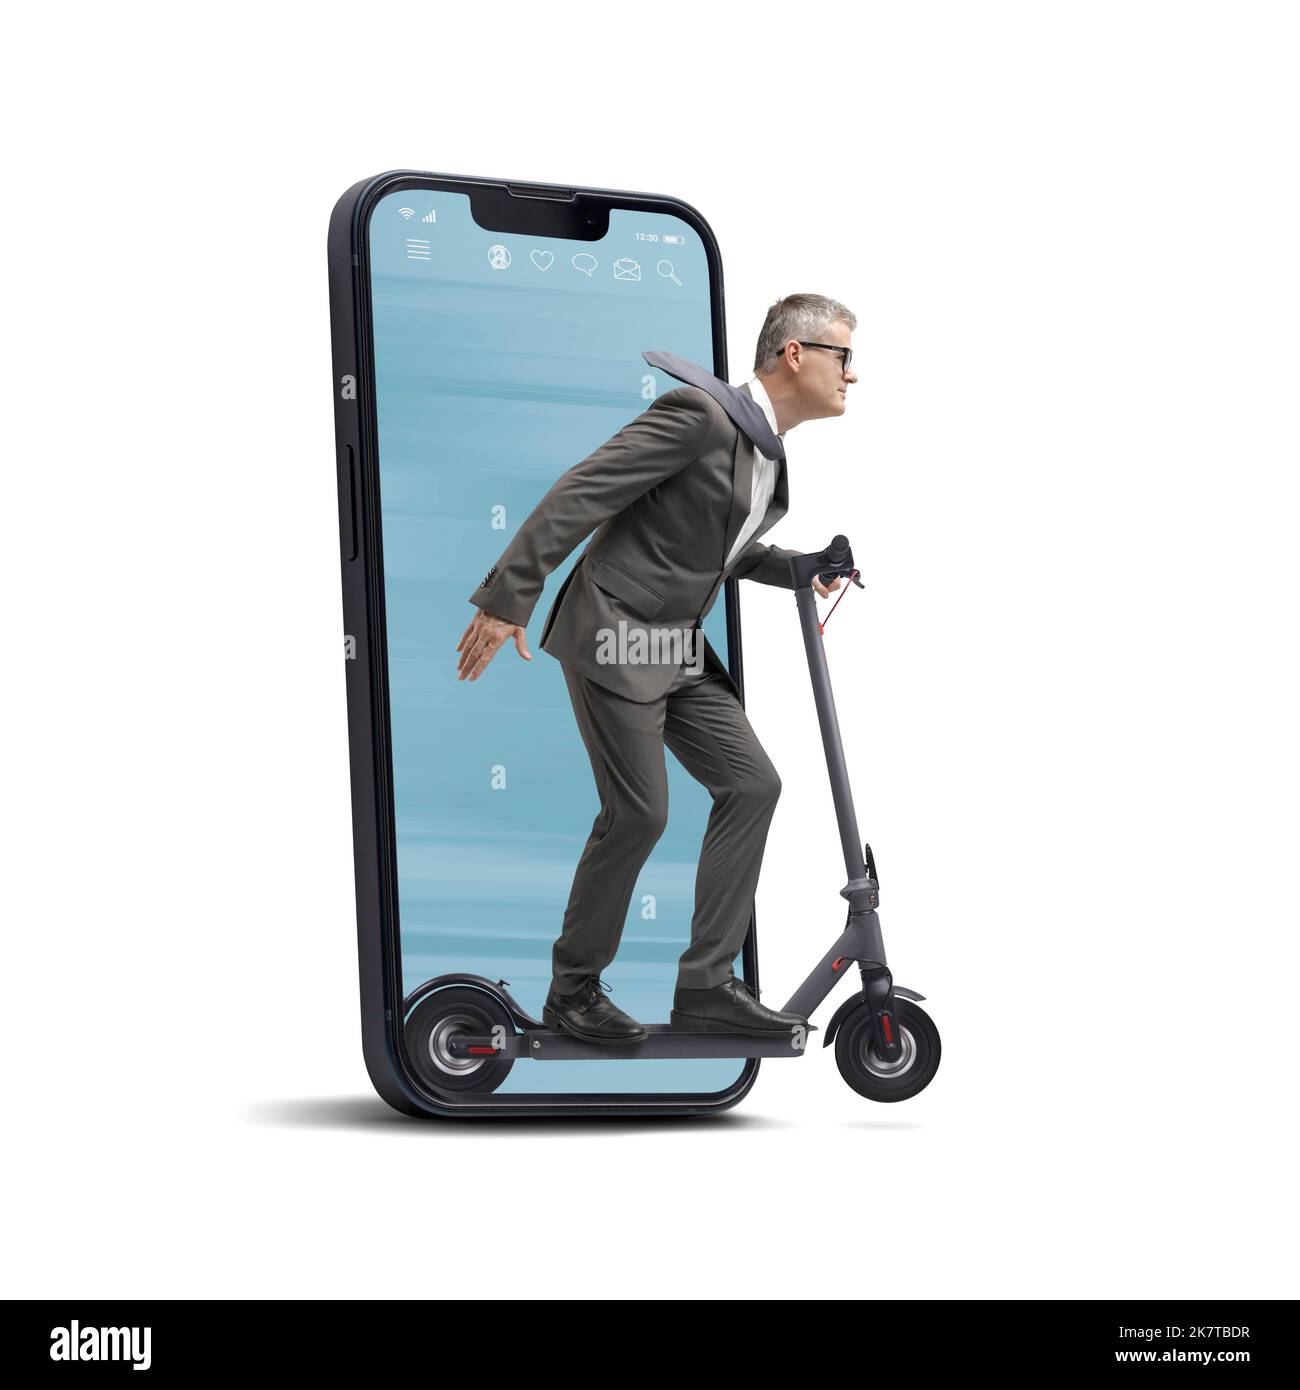 Uomo d'affari in sella a uno scooter elettrico che esce dallo schermo di uno smartphone, isolato su sfondo bianco Foto Stock